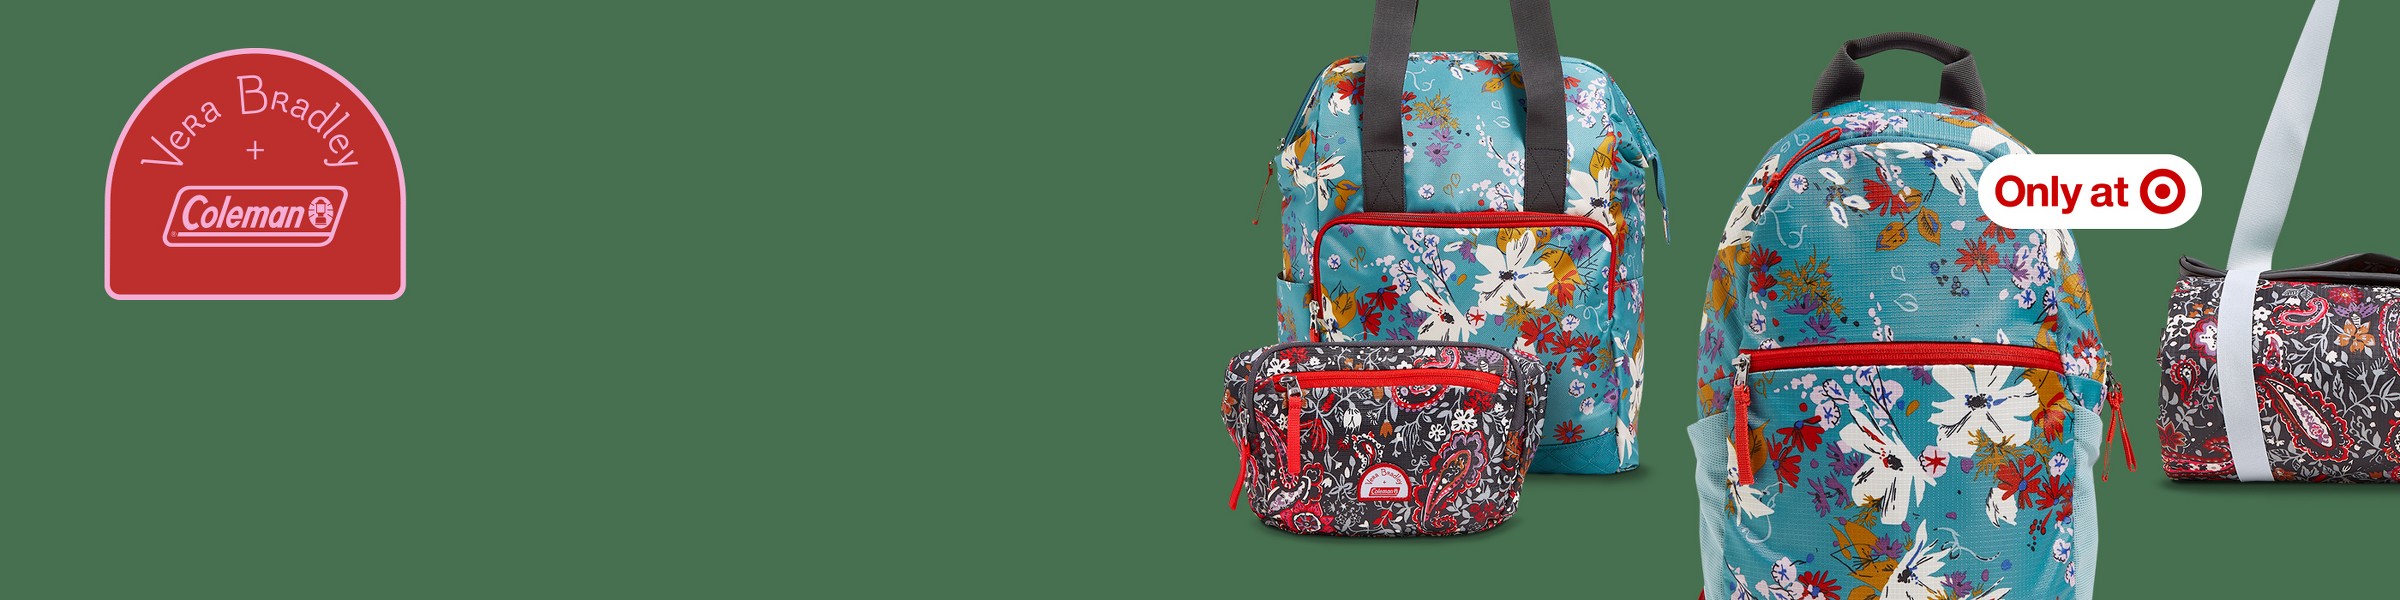 Sunland Waterproof Drawstring Sackpack Backpack Gym Sports Bag Travel Bag Black